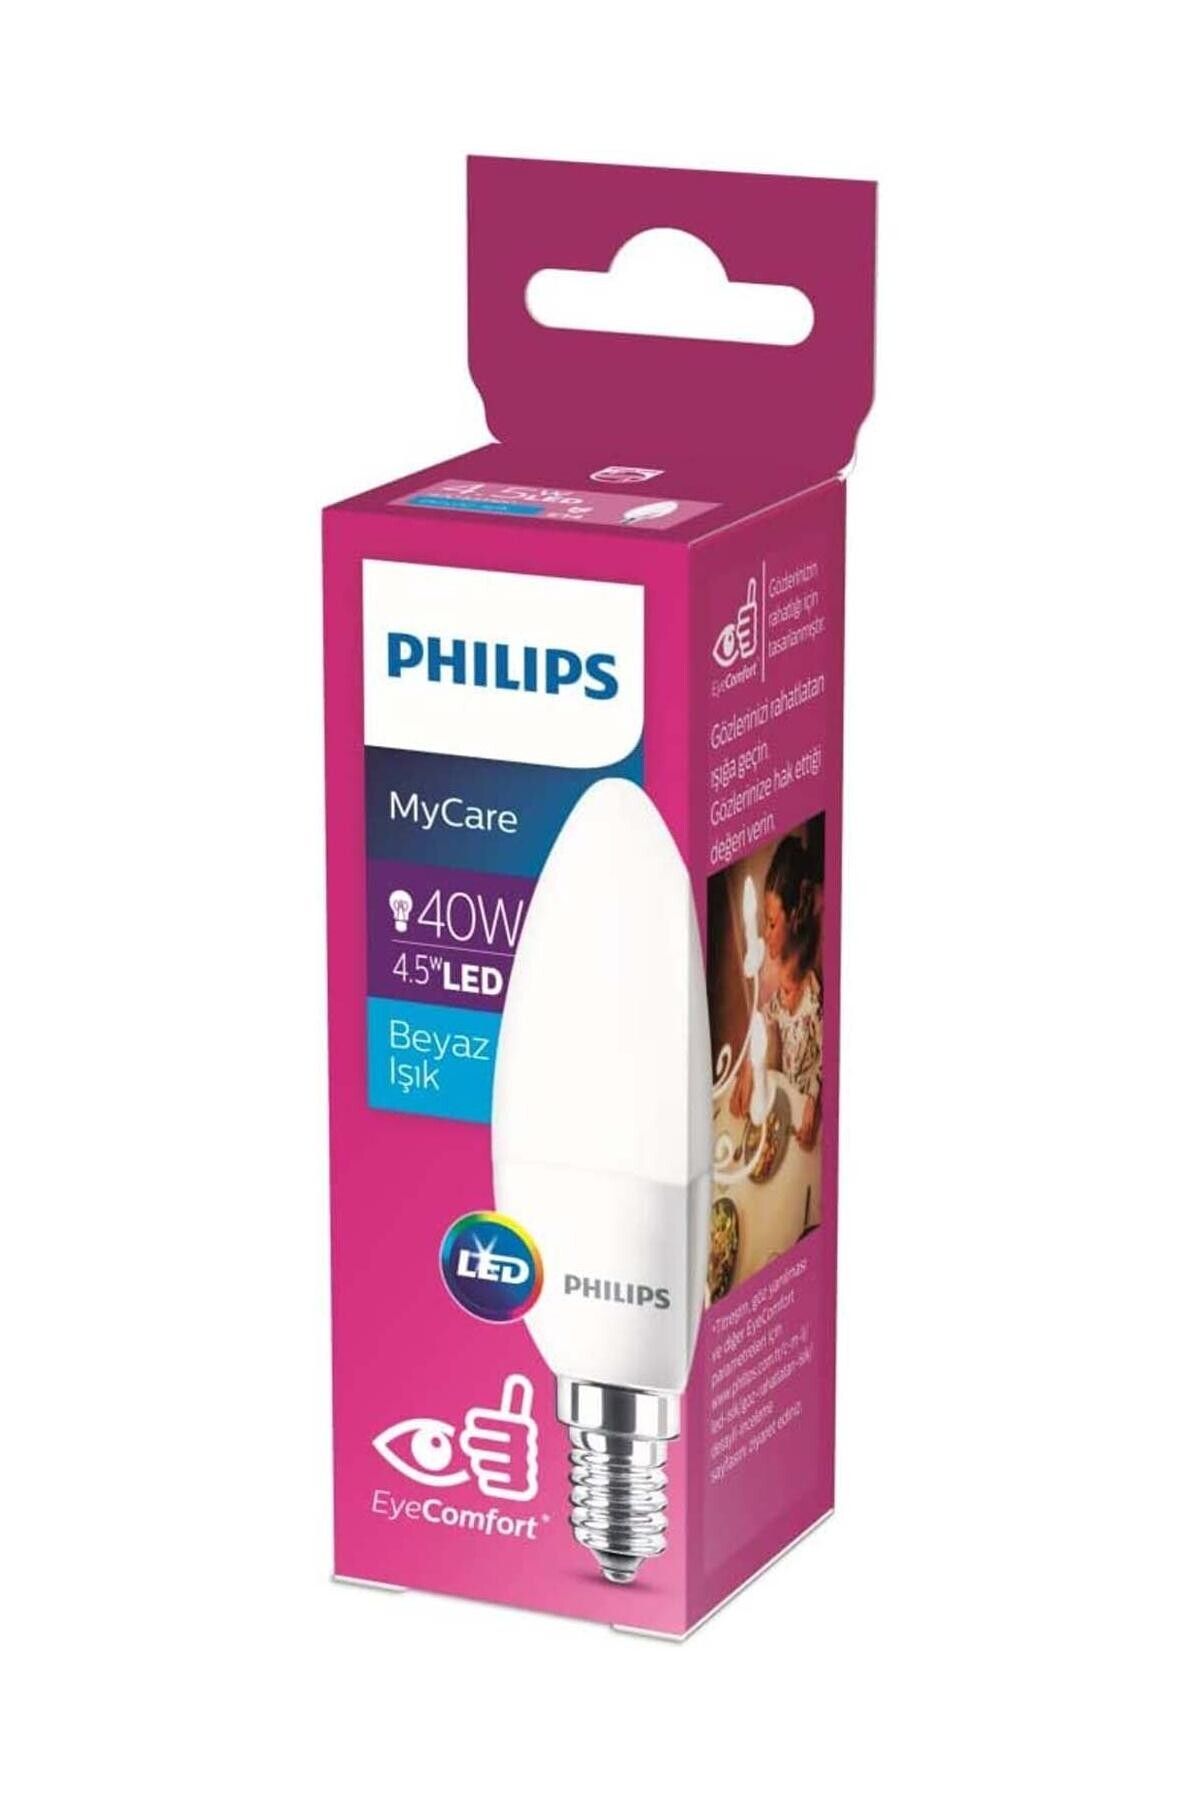 Philips Ledcandle 40w Beyaz Işık E14